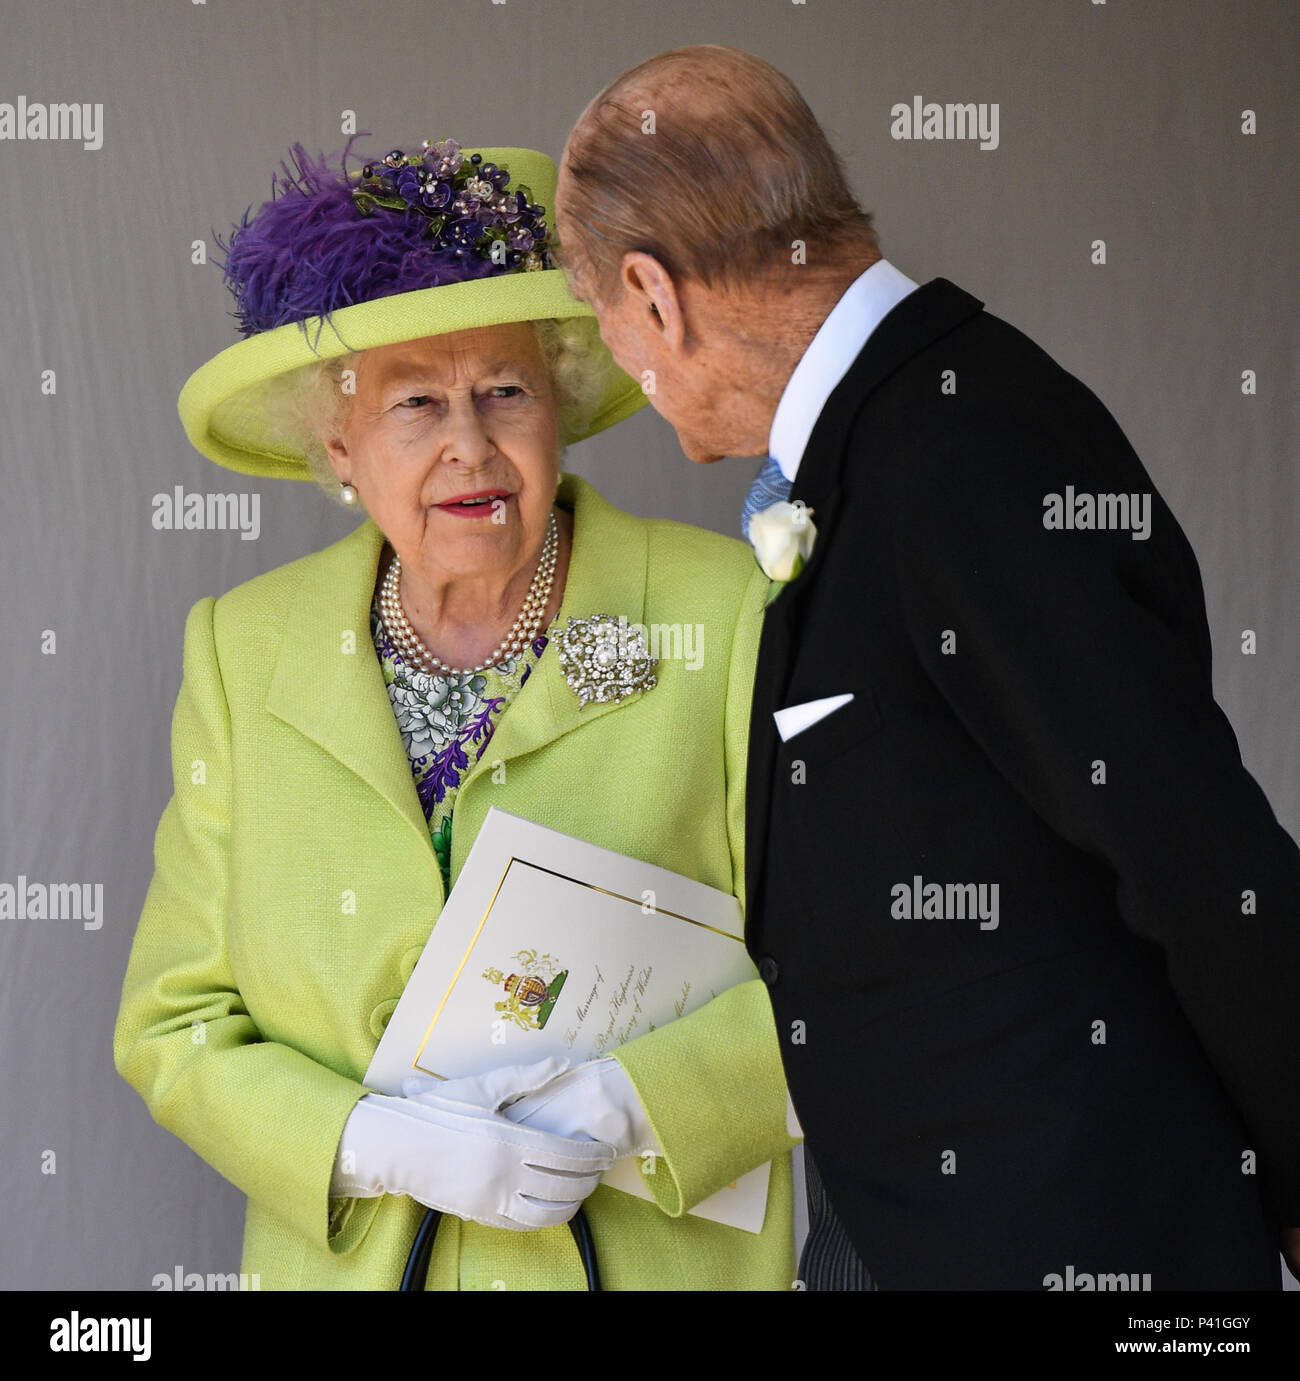 Le mariage du prince Harry et Meghan Markle au château de Windsor comprend  : la reine Elizabeth